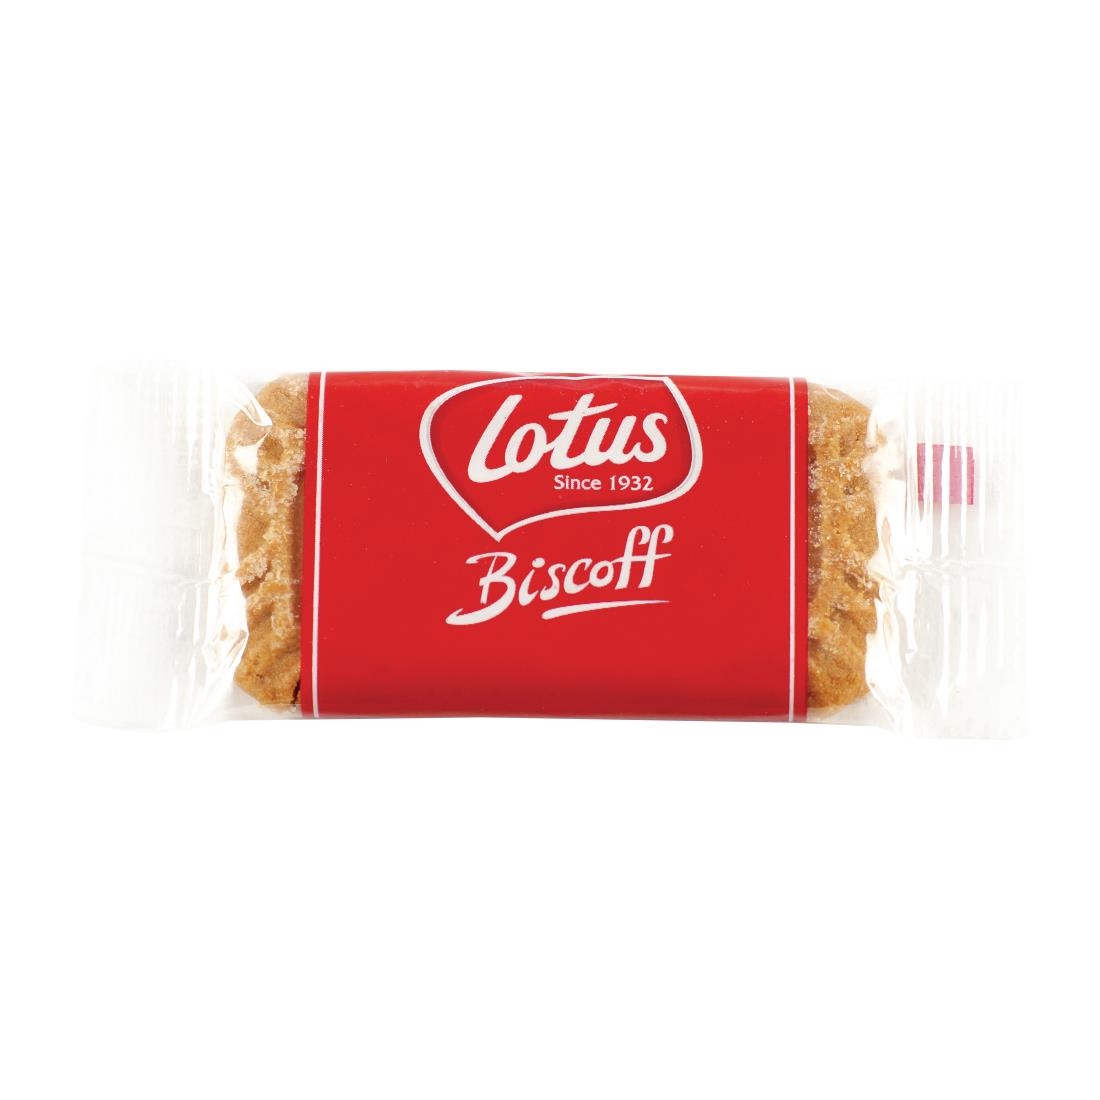 Lotus Biscoff Caramelised Biscuits (Pack of 300)